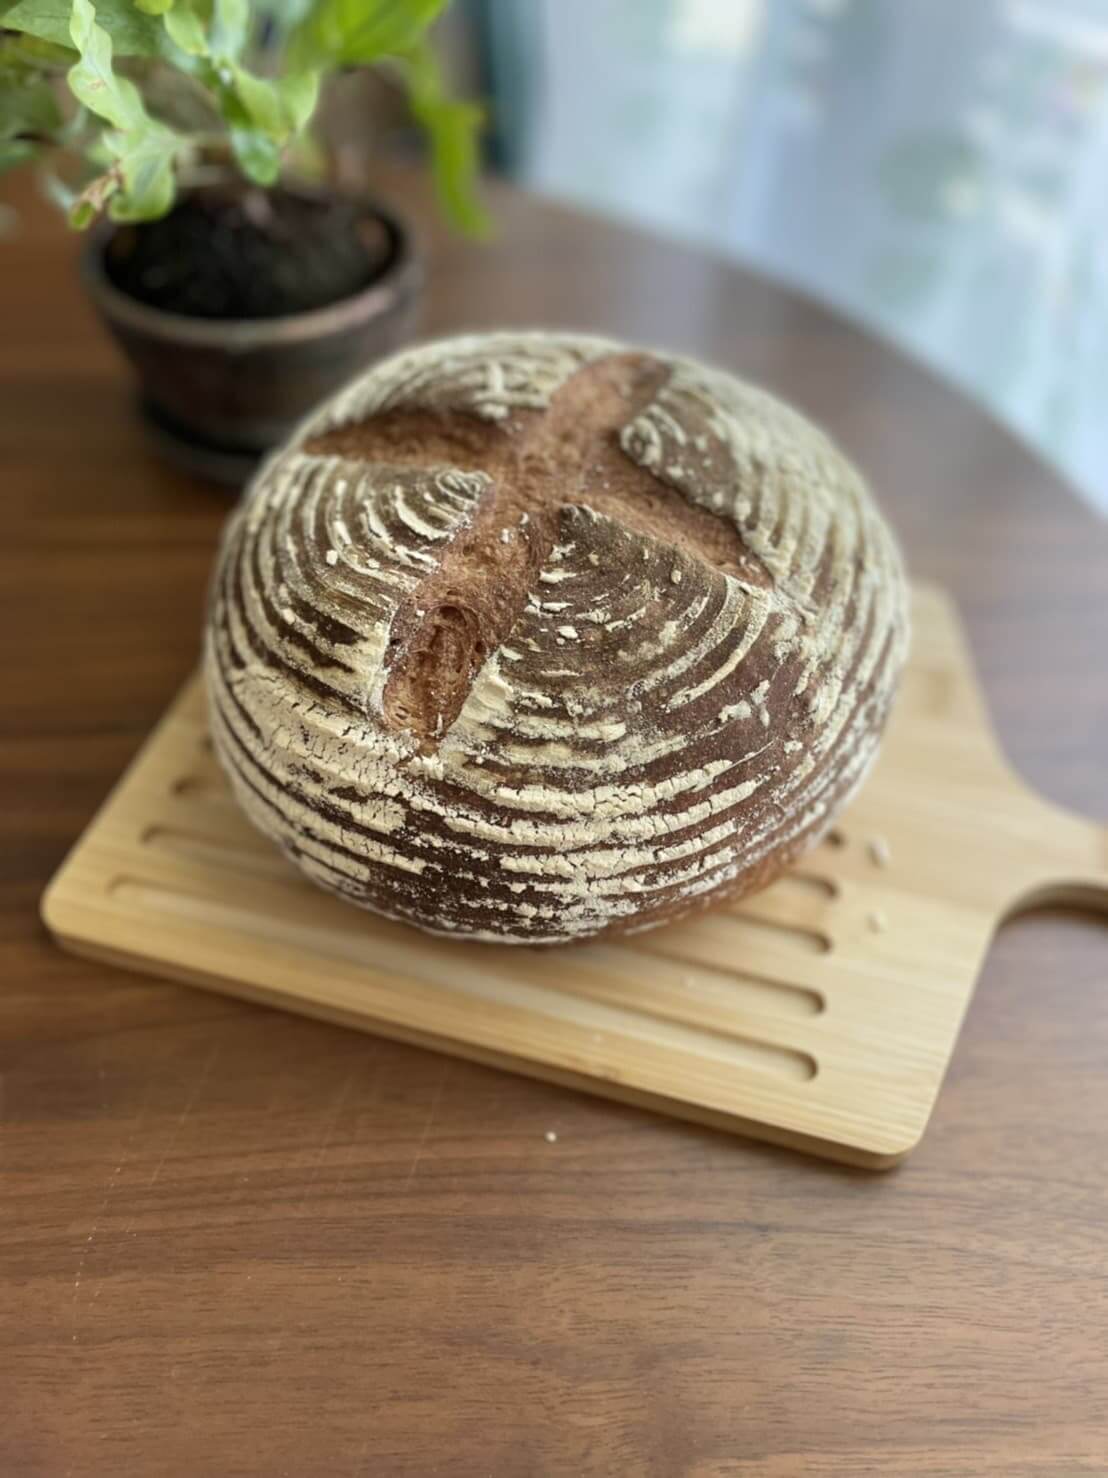 大阪の泉佐野panlabo-パン教室のパンラボのパン1